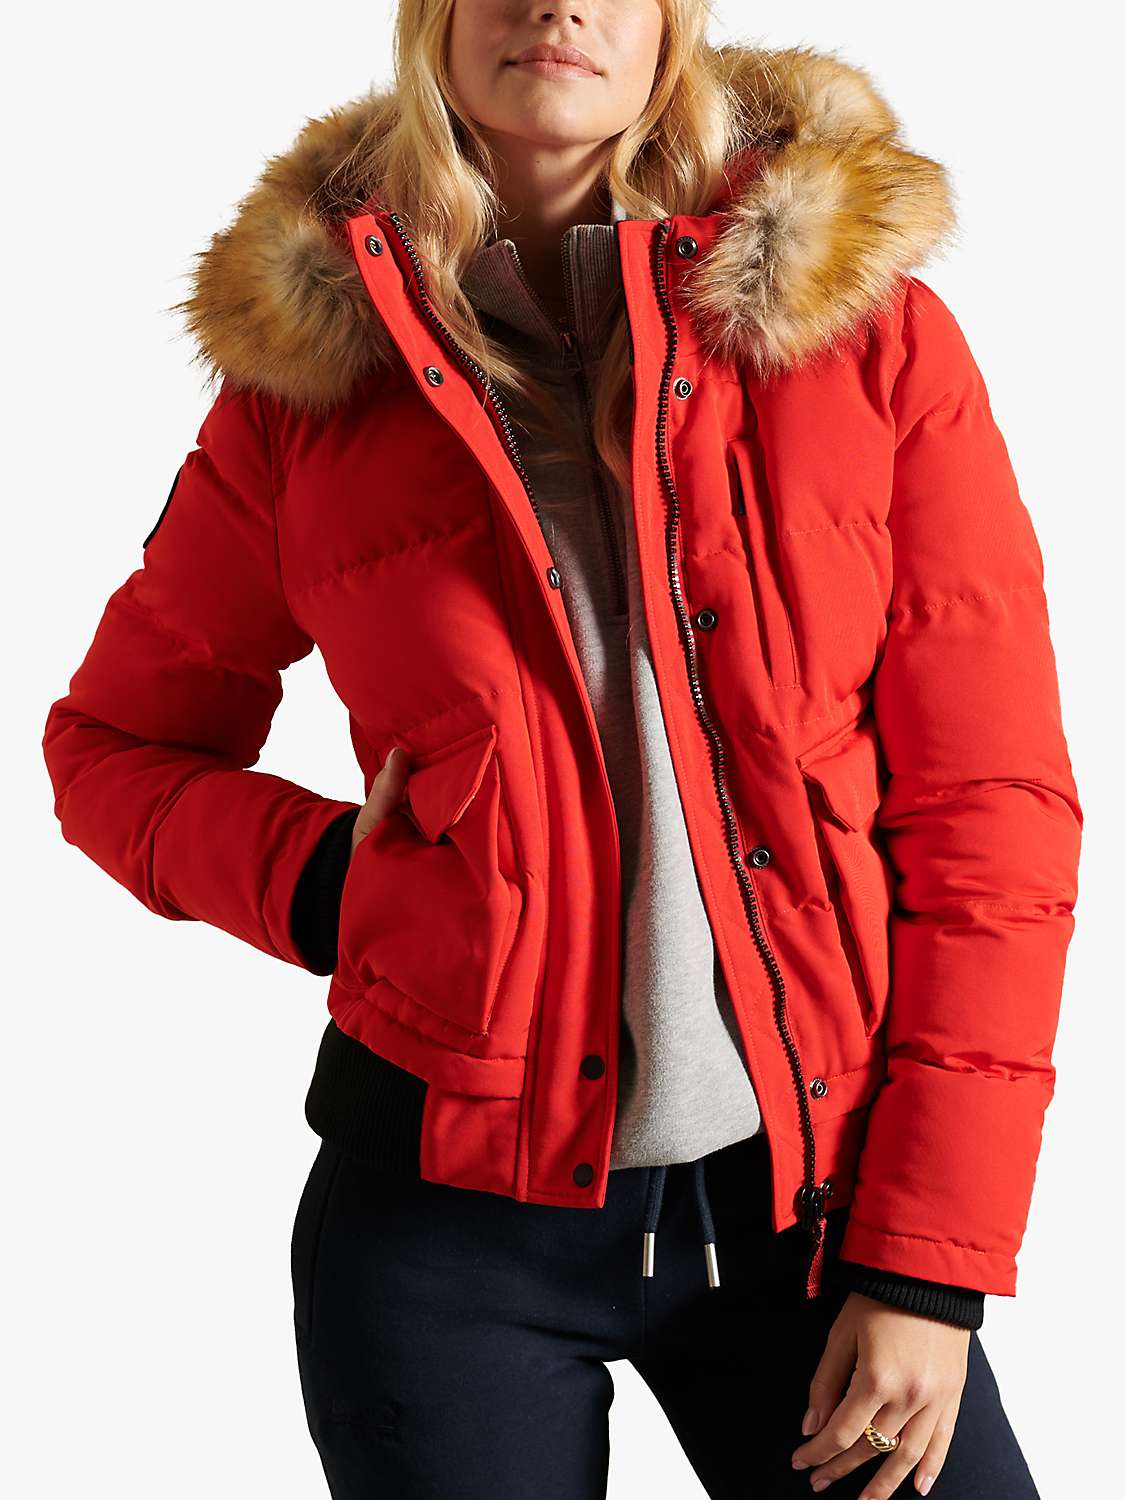 Buy Superdry Original & Vintage Everest Fur Bomber Jacket Online at johnlewis.com